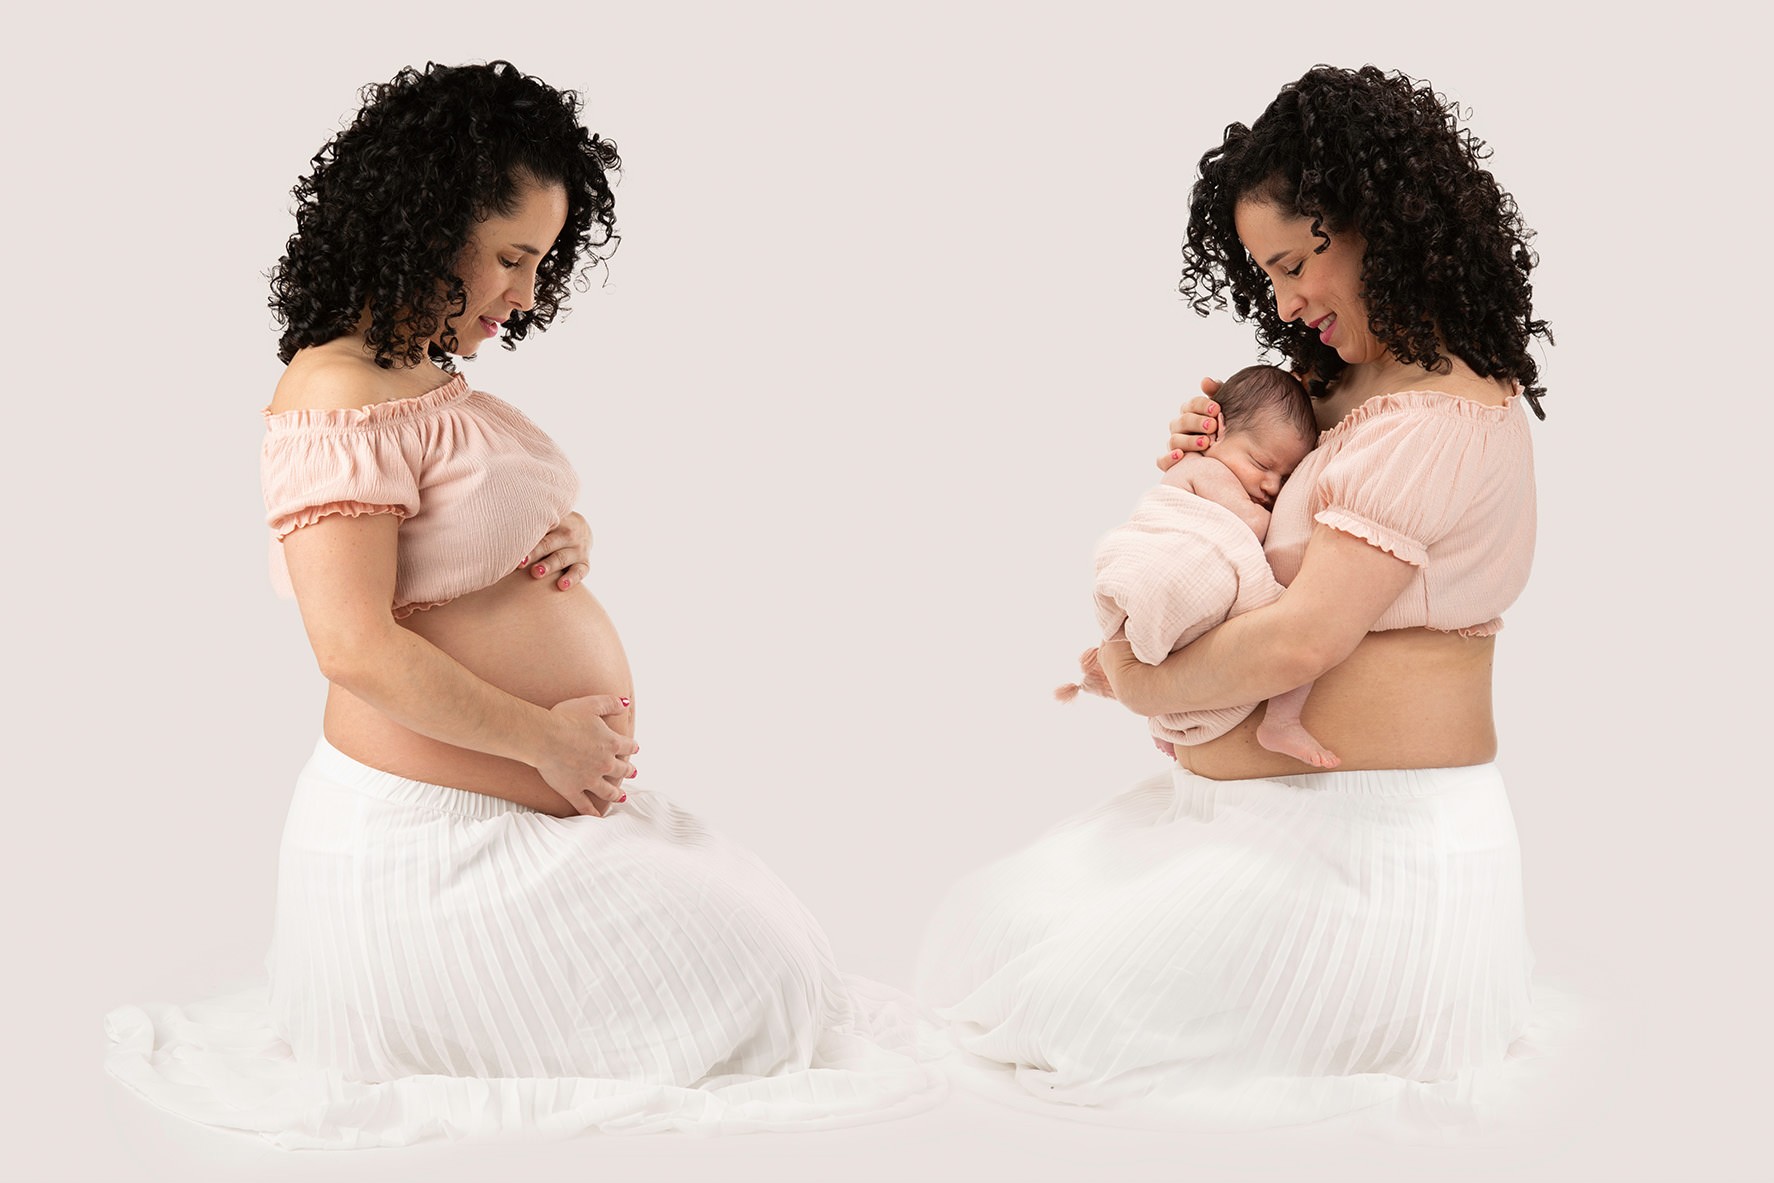 Fotografia embarazada y recien nacido en estudio